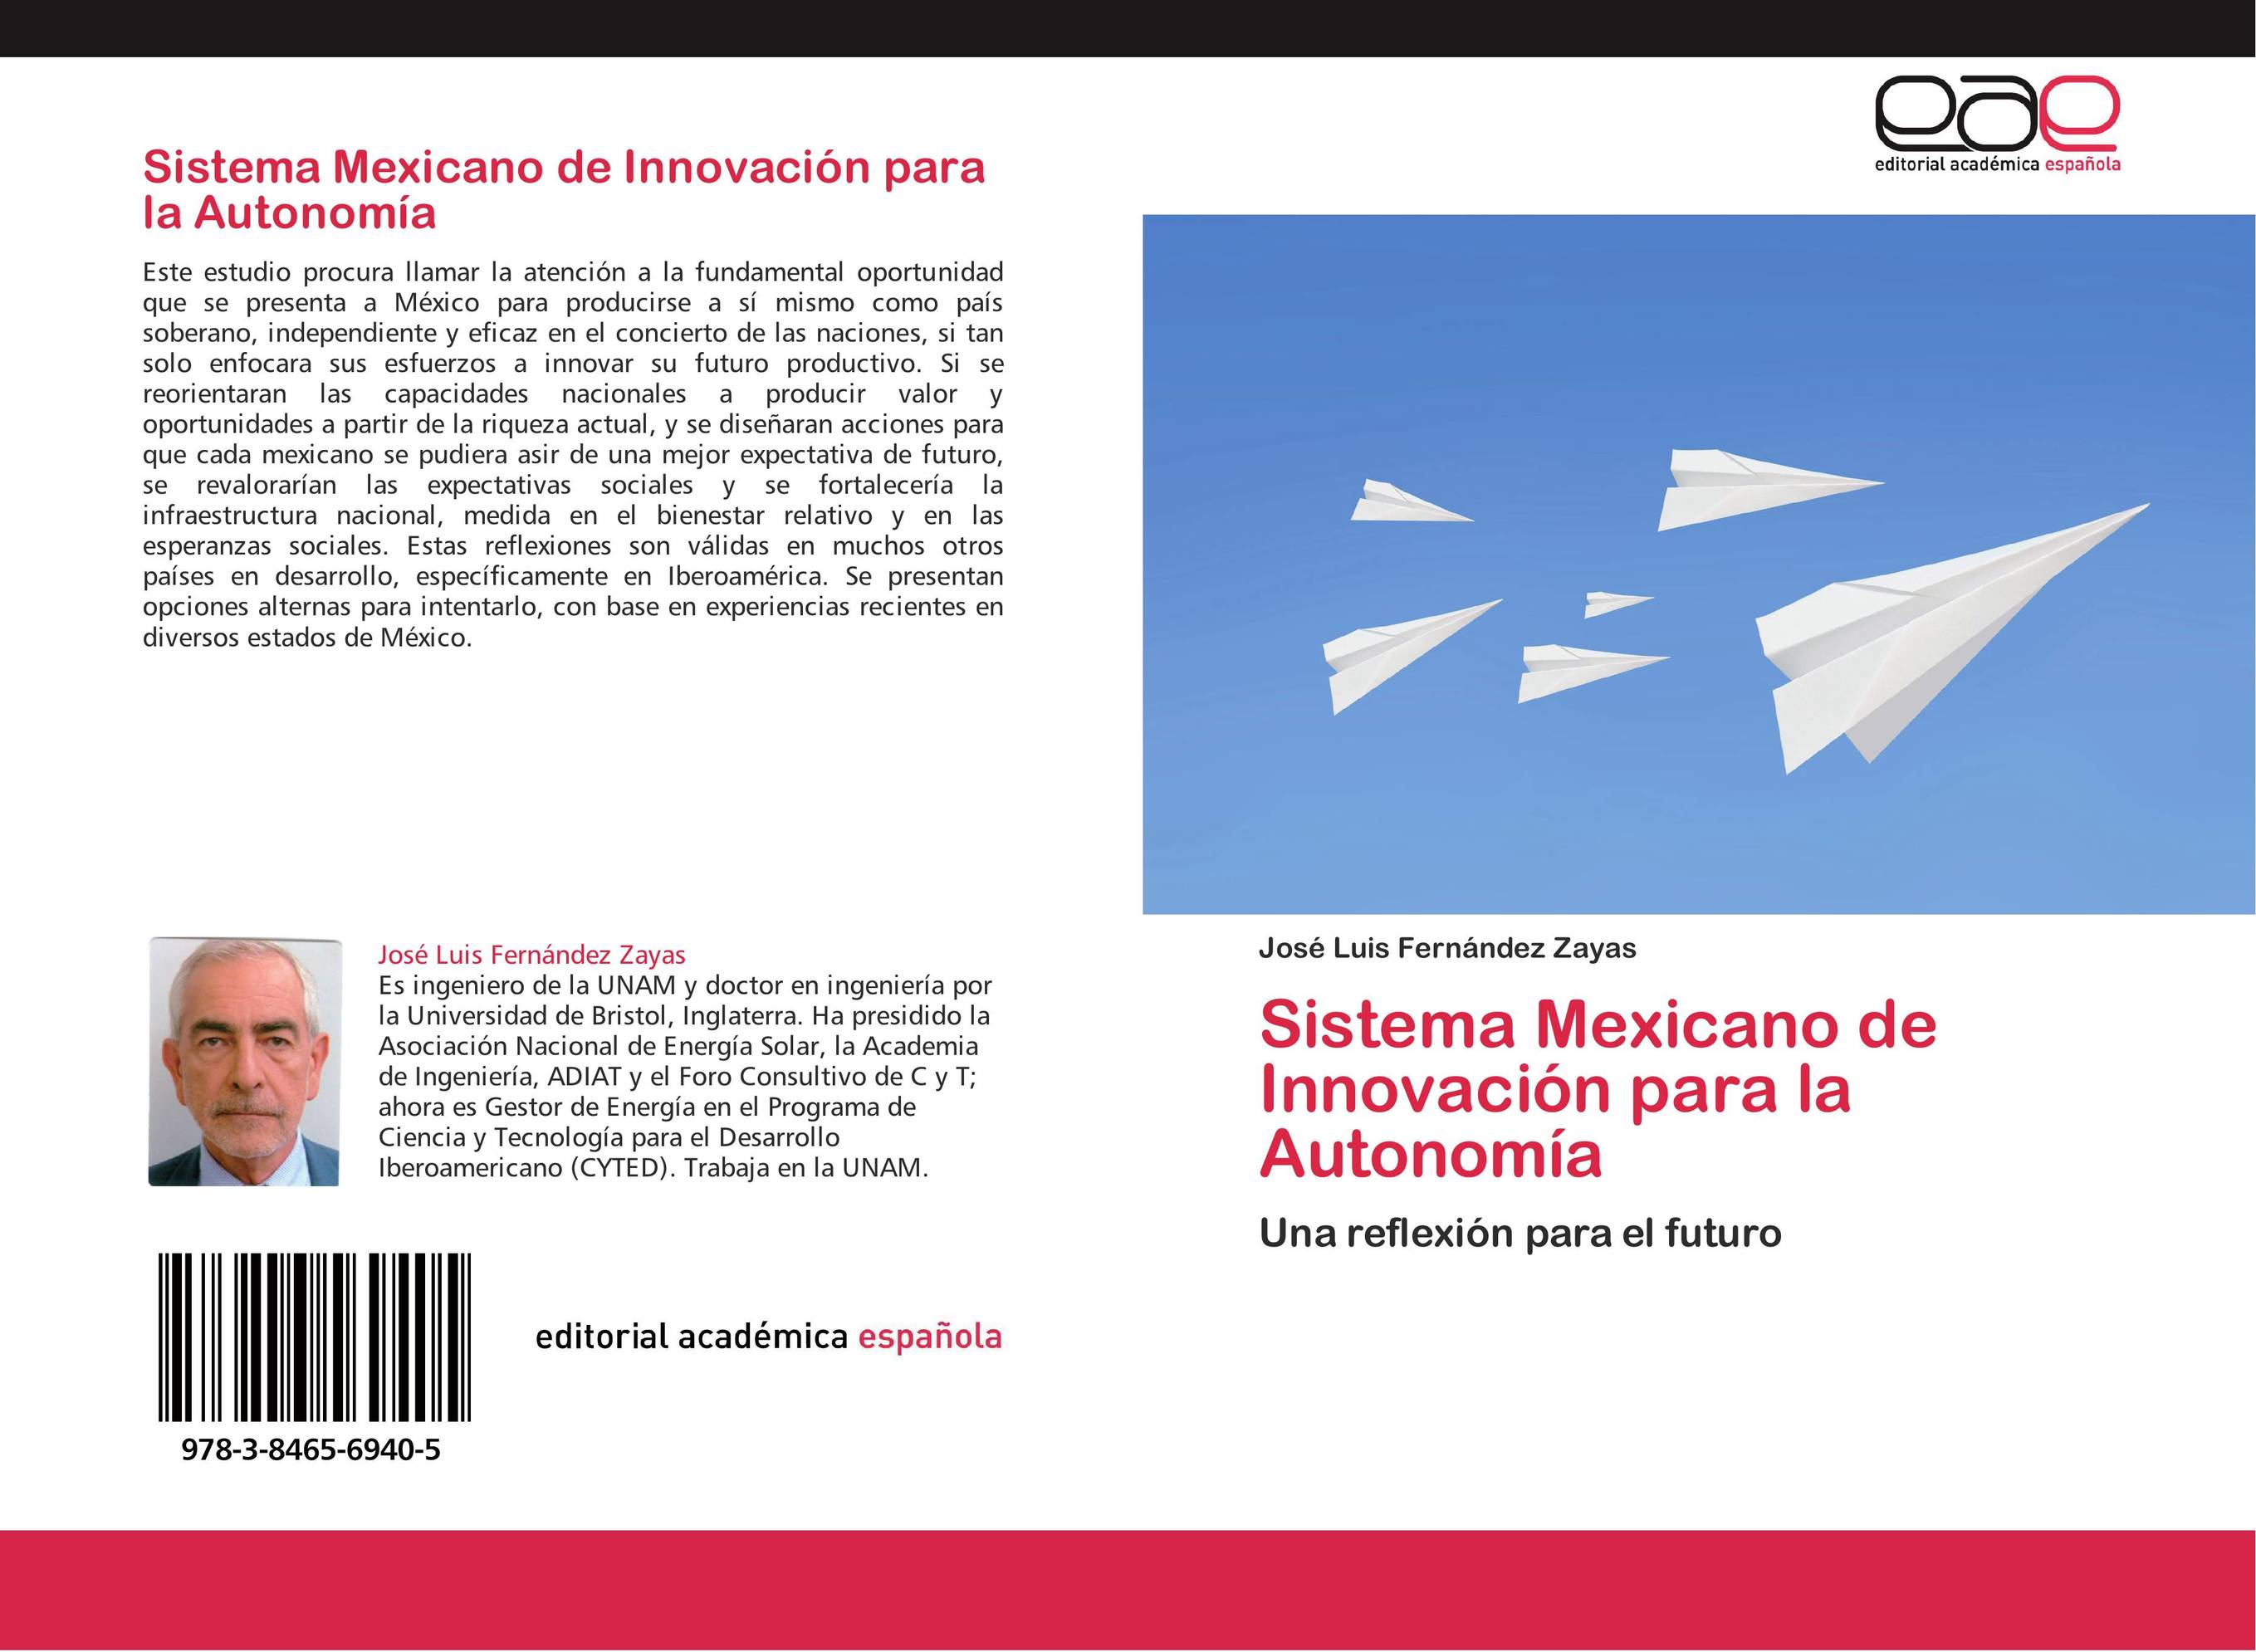 Sistema Mexicano de Innovación para la Autonomía